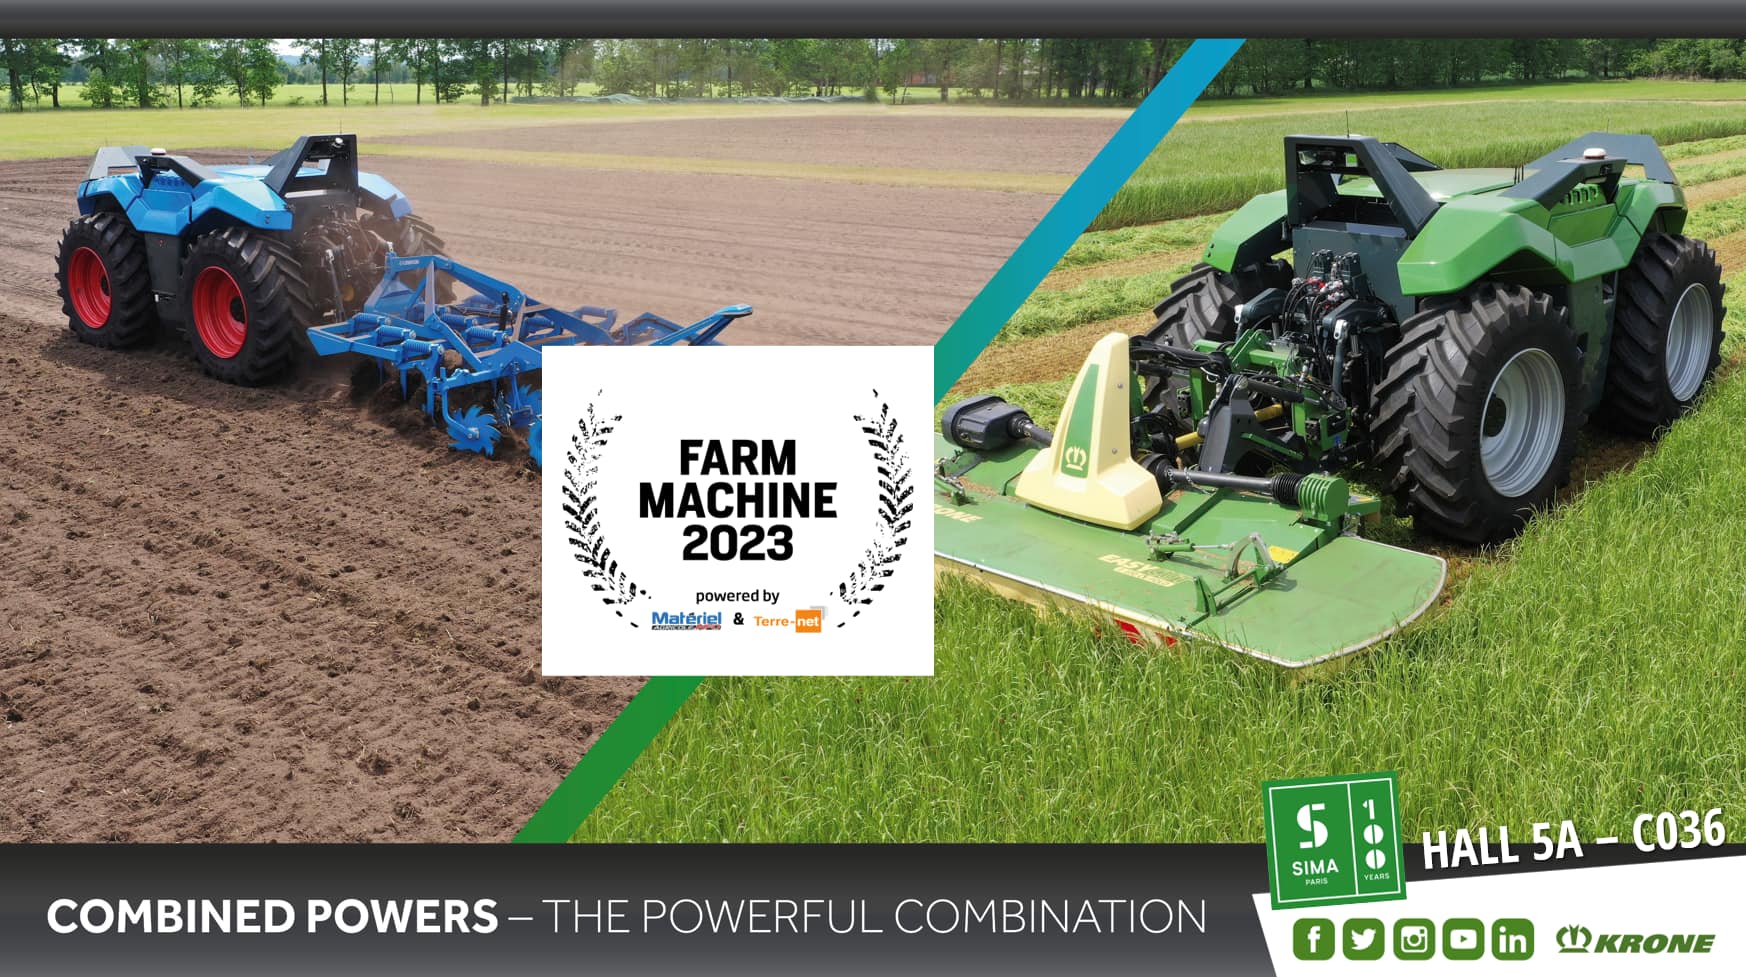 Автономний сільськогосподарський агрегат Combined Powers Krone/Lemken 🏆 виграє у номінації Farm Machine 2023 на SIMA Paris!